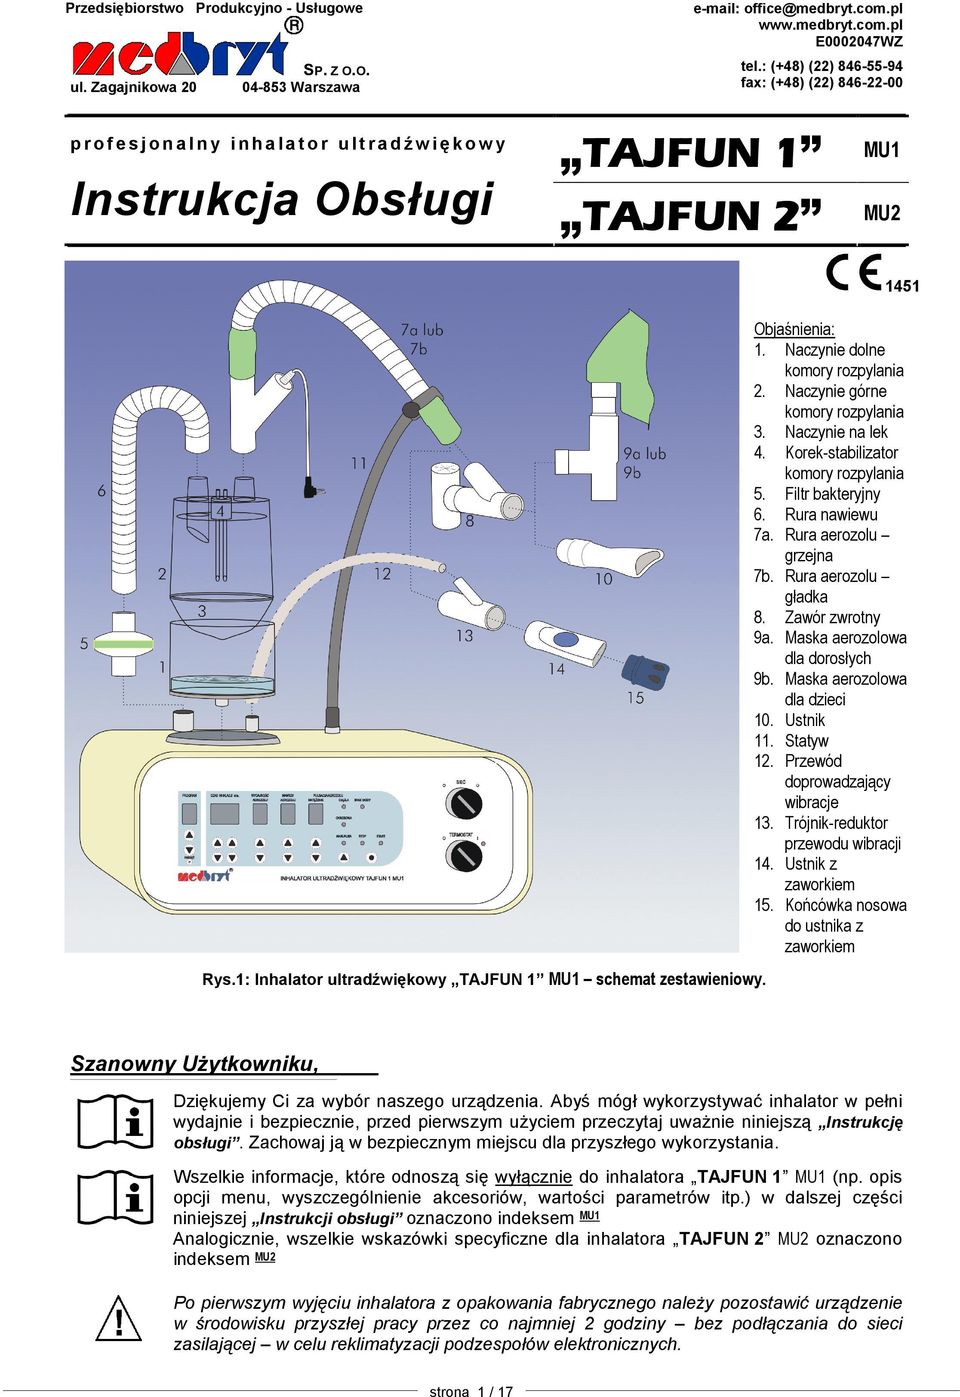 : Inhalator ultradźwiękowy TAJFUN MU schemat zestawieniowy. 45 Objaśnienia:. Naczynie dolne komory rozpylania. Naczynie górne komory rozpylania 3. Naczynie na lek 4.